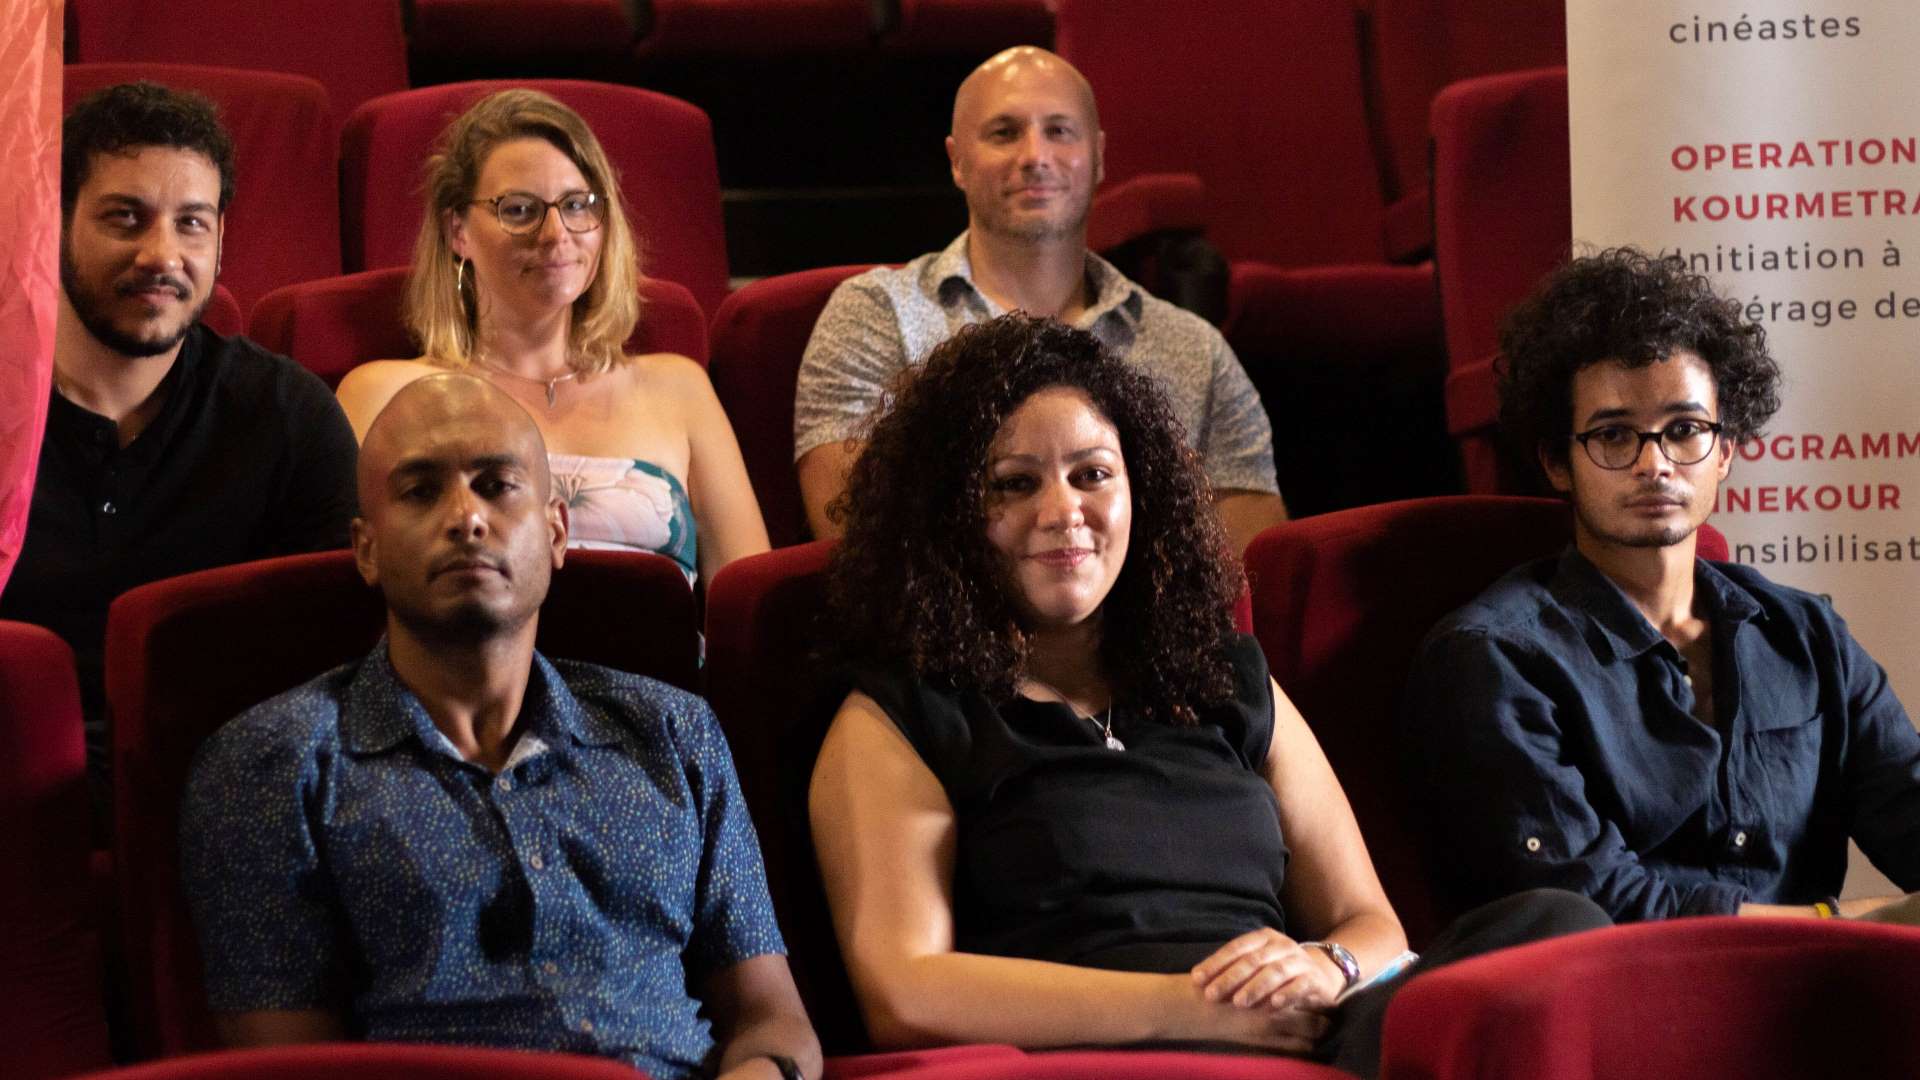 Six jeunes apprentis cinéastes ont été sélectionnés pour présenter leur travail au Comedy Club le 16 novembre prochain.